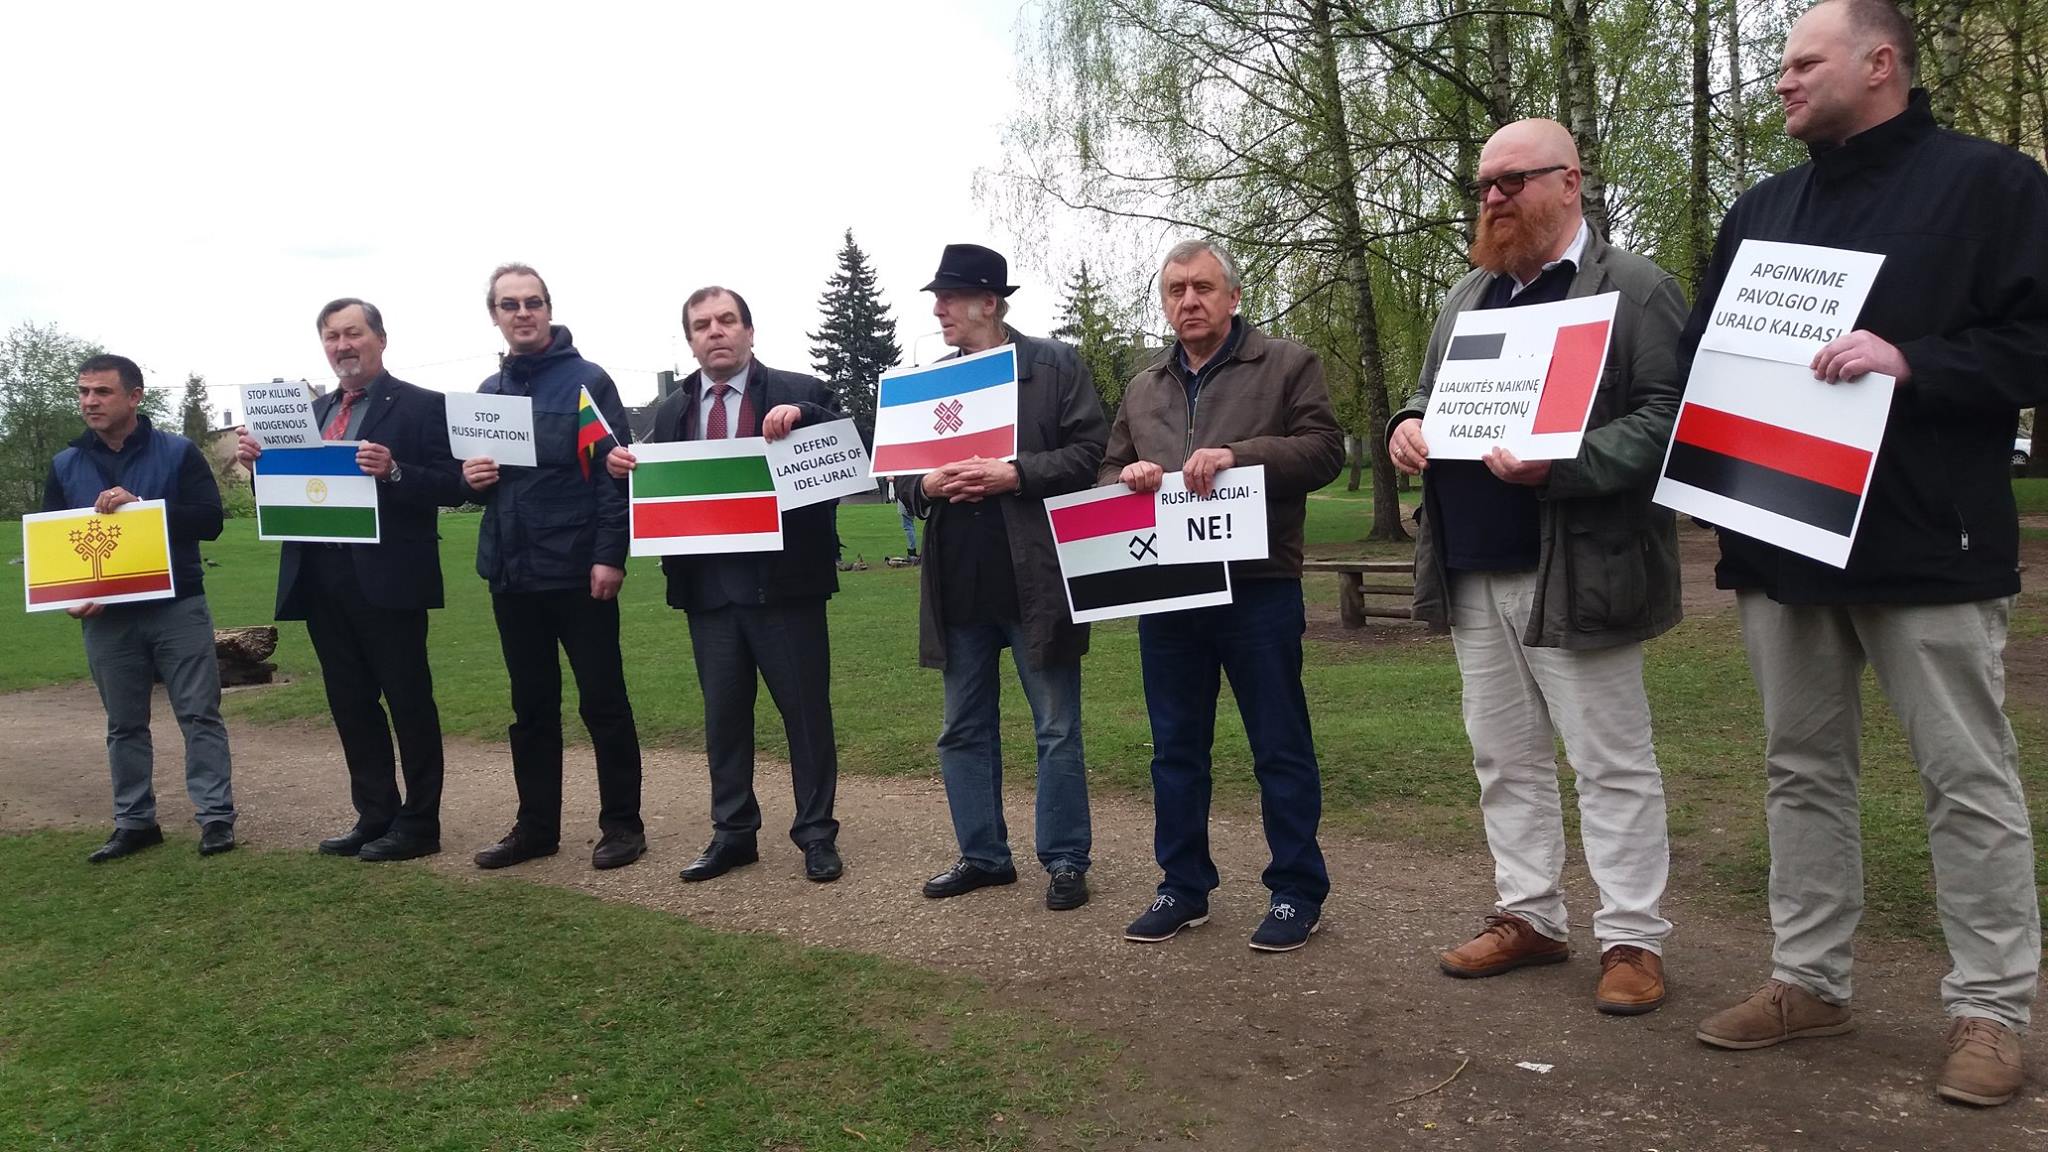 Представники корінних народів Поволжя пікетували посольства РФ по всьому світу